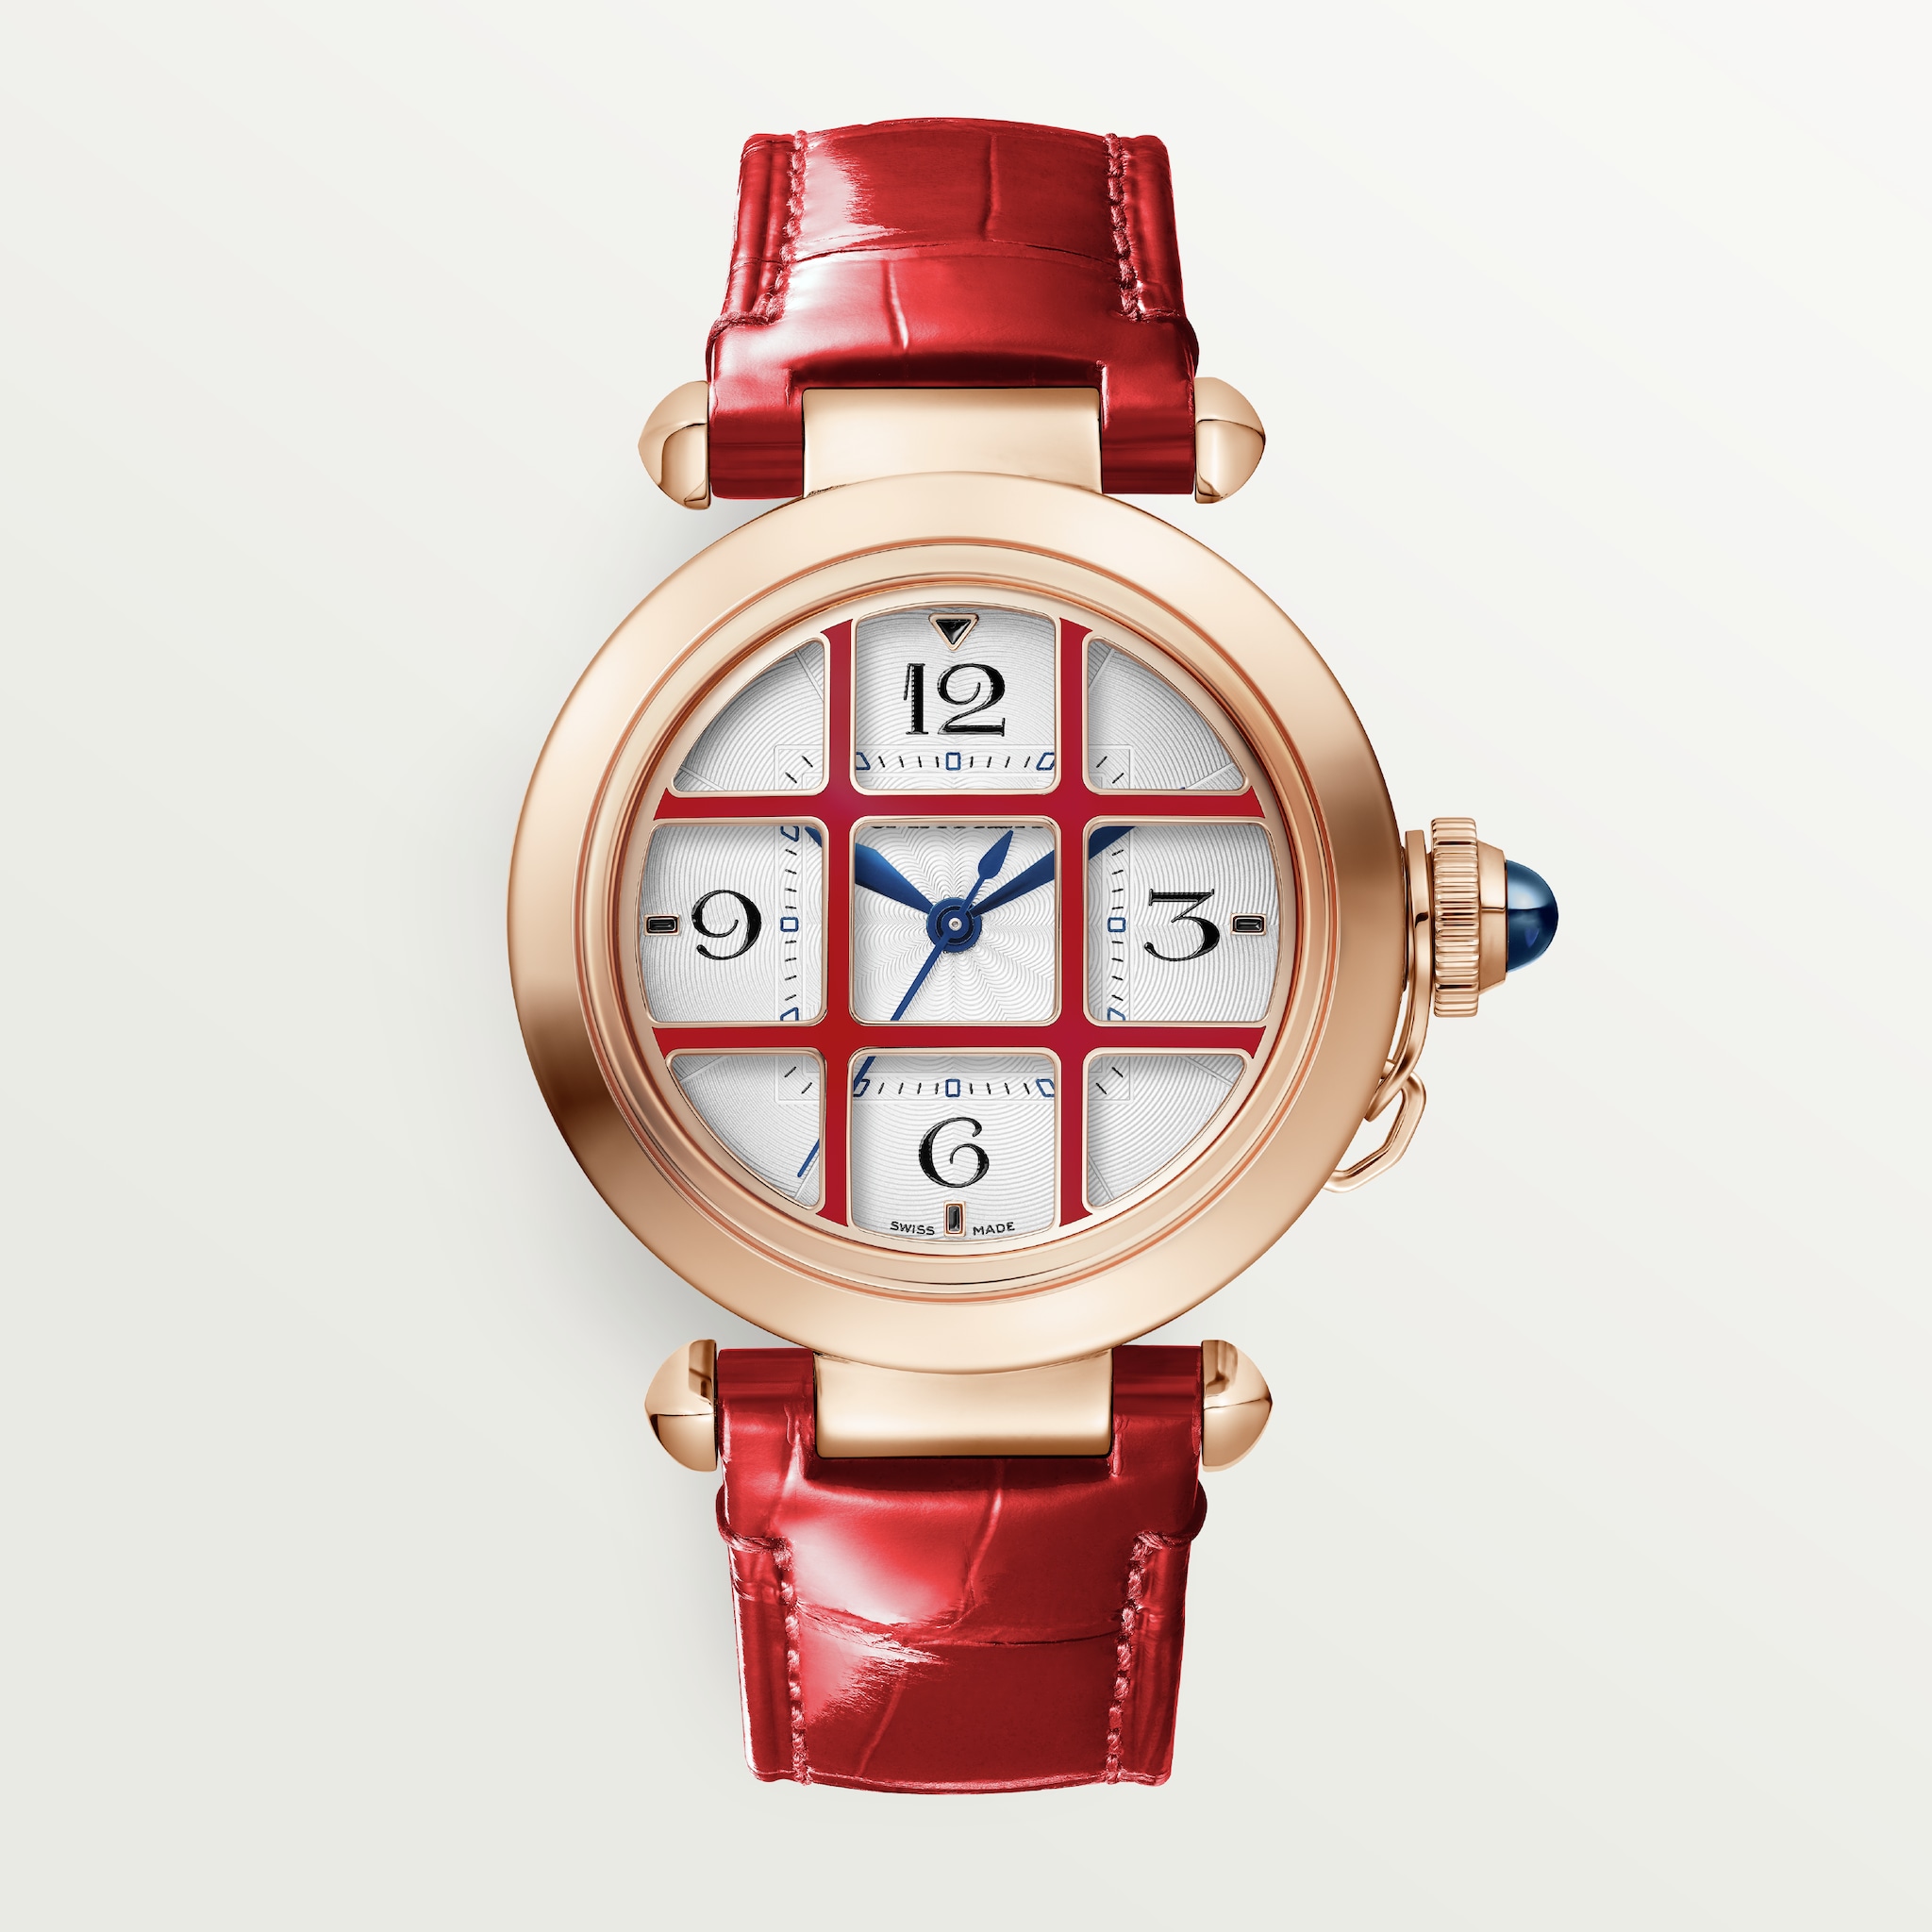 Pasha de Cartier watch35 mm, automatic movement, rose gold, interchangeable leather straps